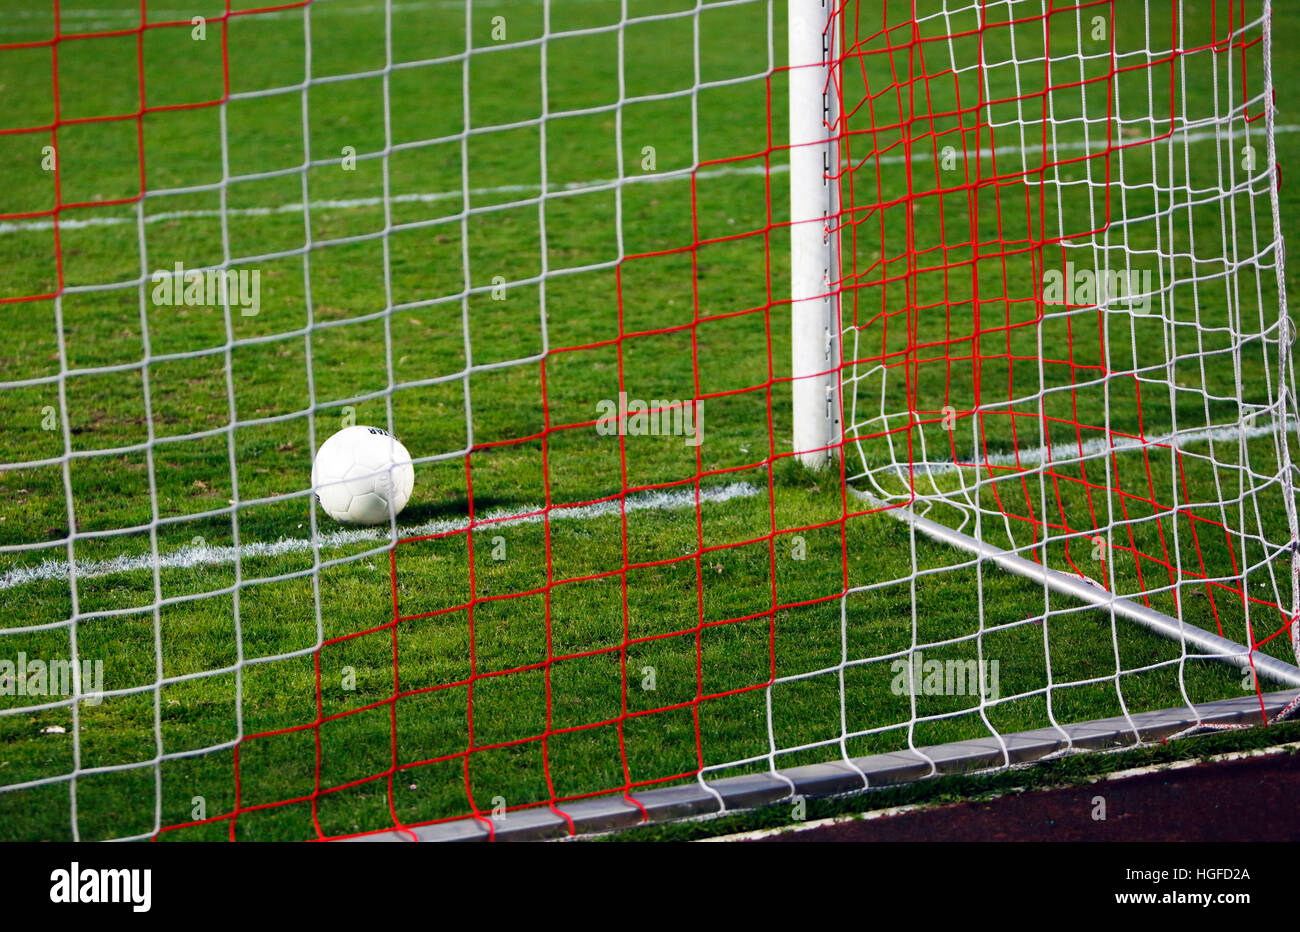 El deporte, el fútbol, el fútbol americano, símbolos, conceptos, el objetivo, la línea de gol, net Foto de stock